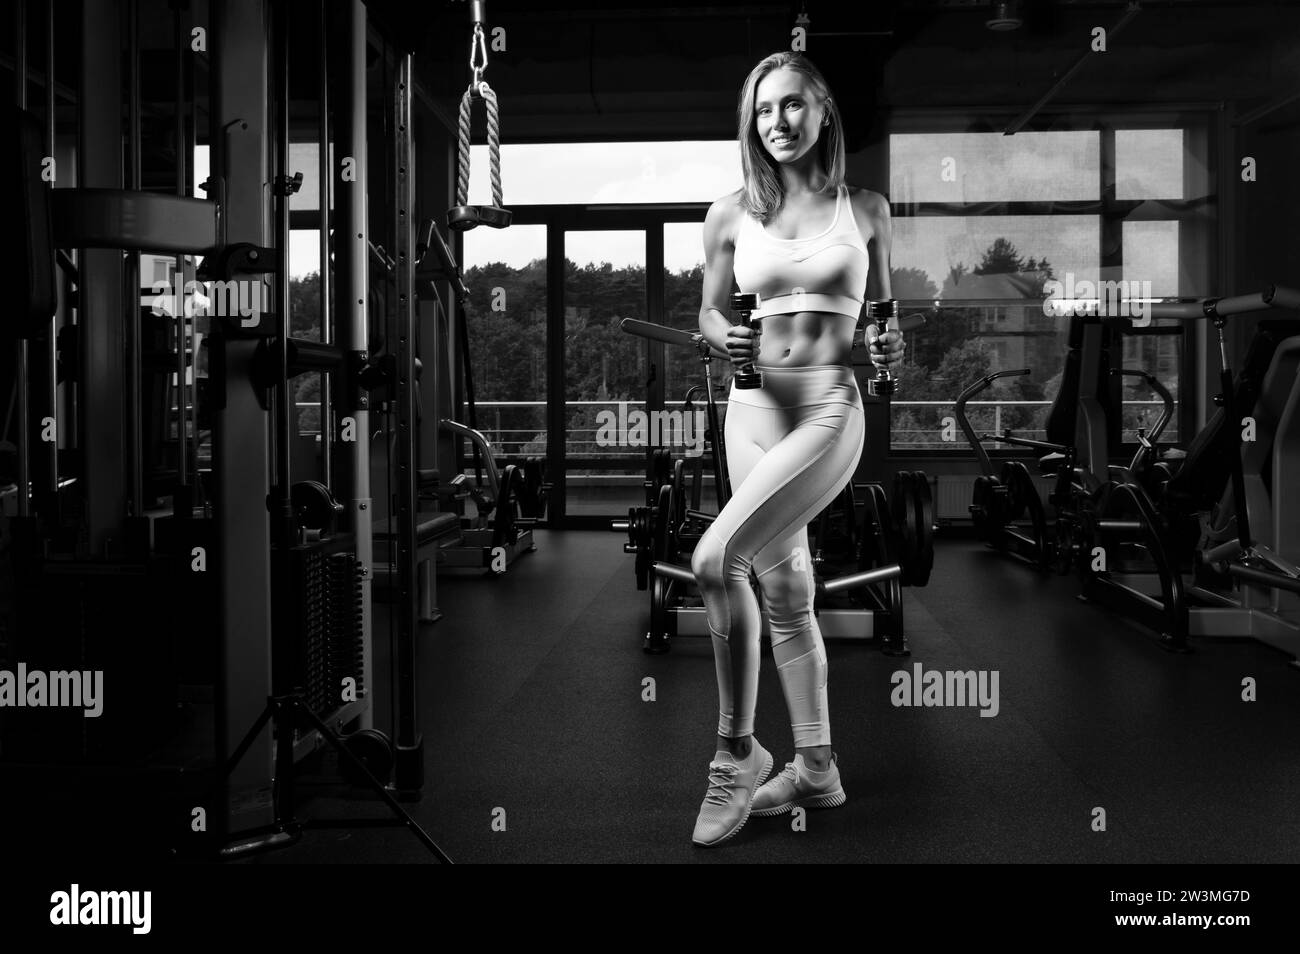 Charmante jeune sportswoman posant dans la salle de gym. Concept de culturisme. Sport. Haltérophilie. Supports mixtes Banque D'Images